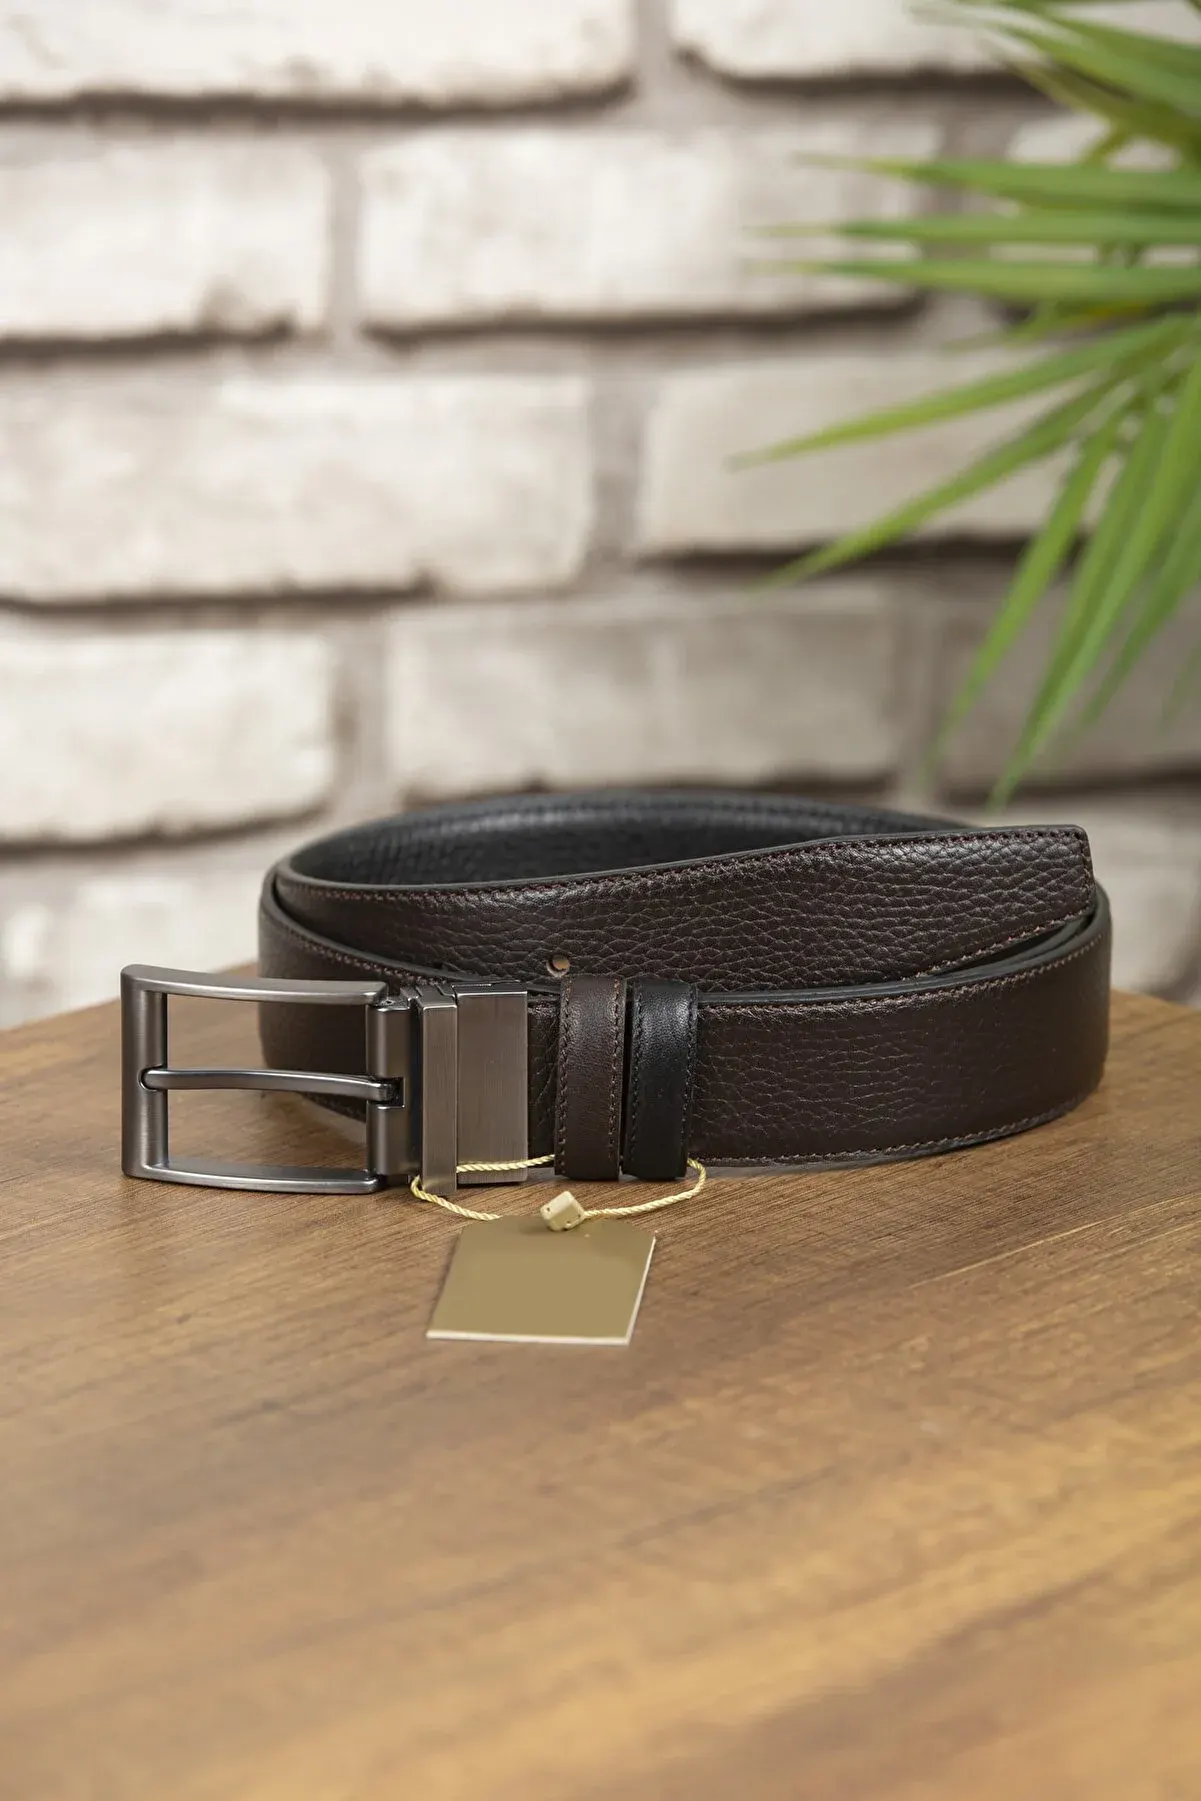 Black and Gold Snake Designer Belt- Order Wholesale